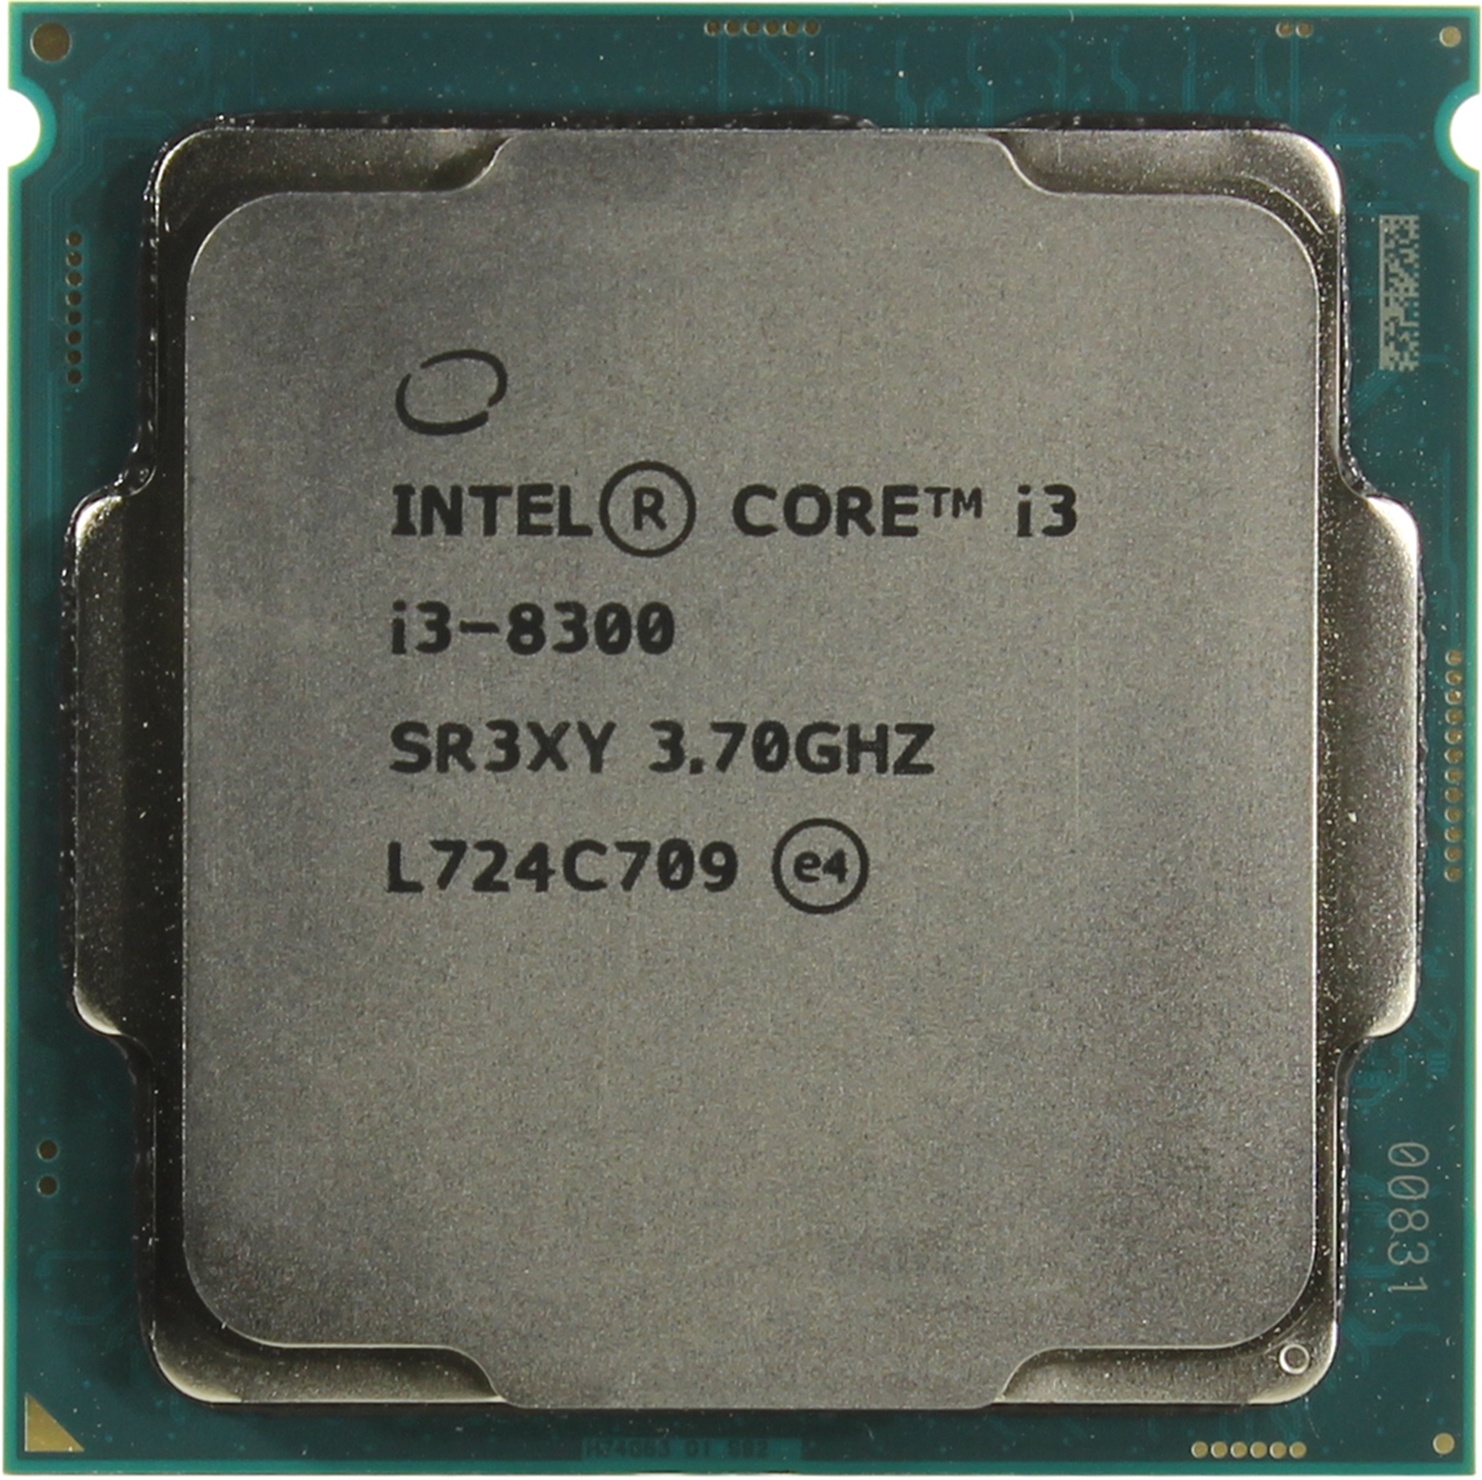 Процессор Intel Core i3-8300 (CM8068403377111S R3XY) 3.7GHz, 4 ядра/4 потока, 8Mb, HD Graphics 630, 62W (Socket 1151)